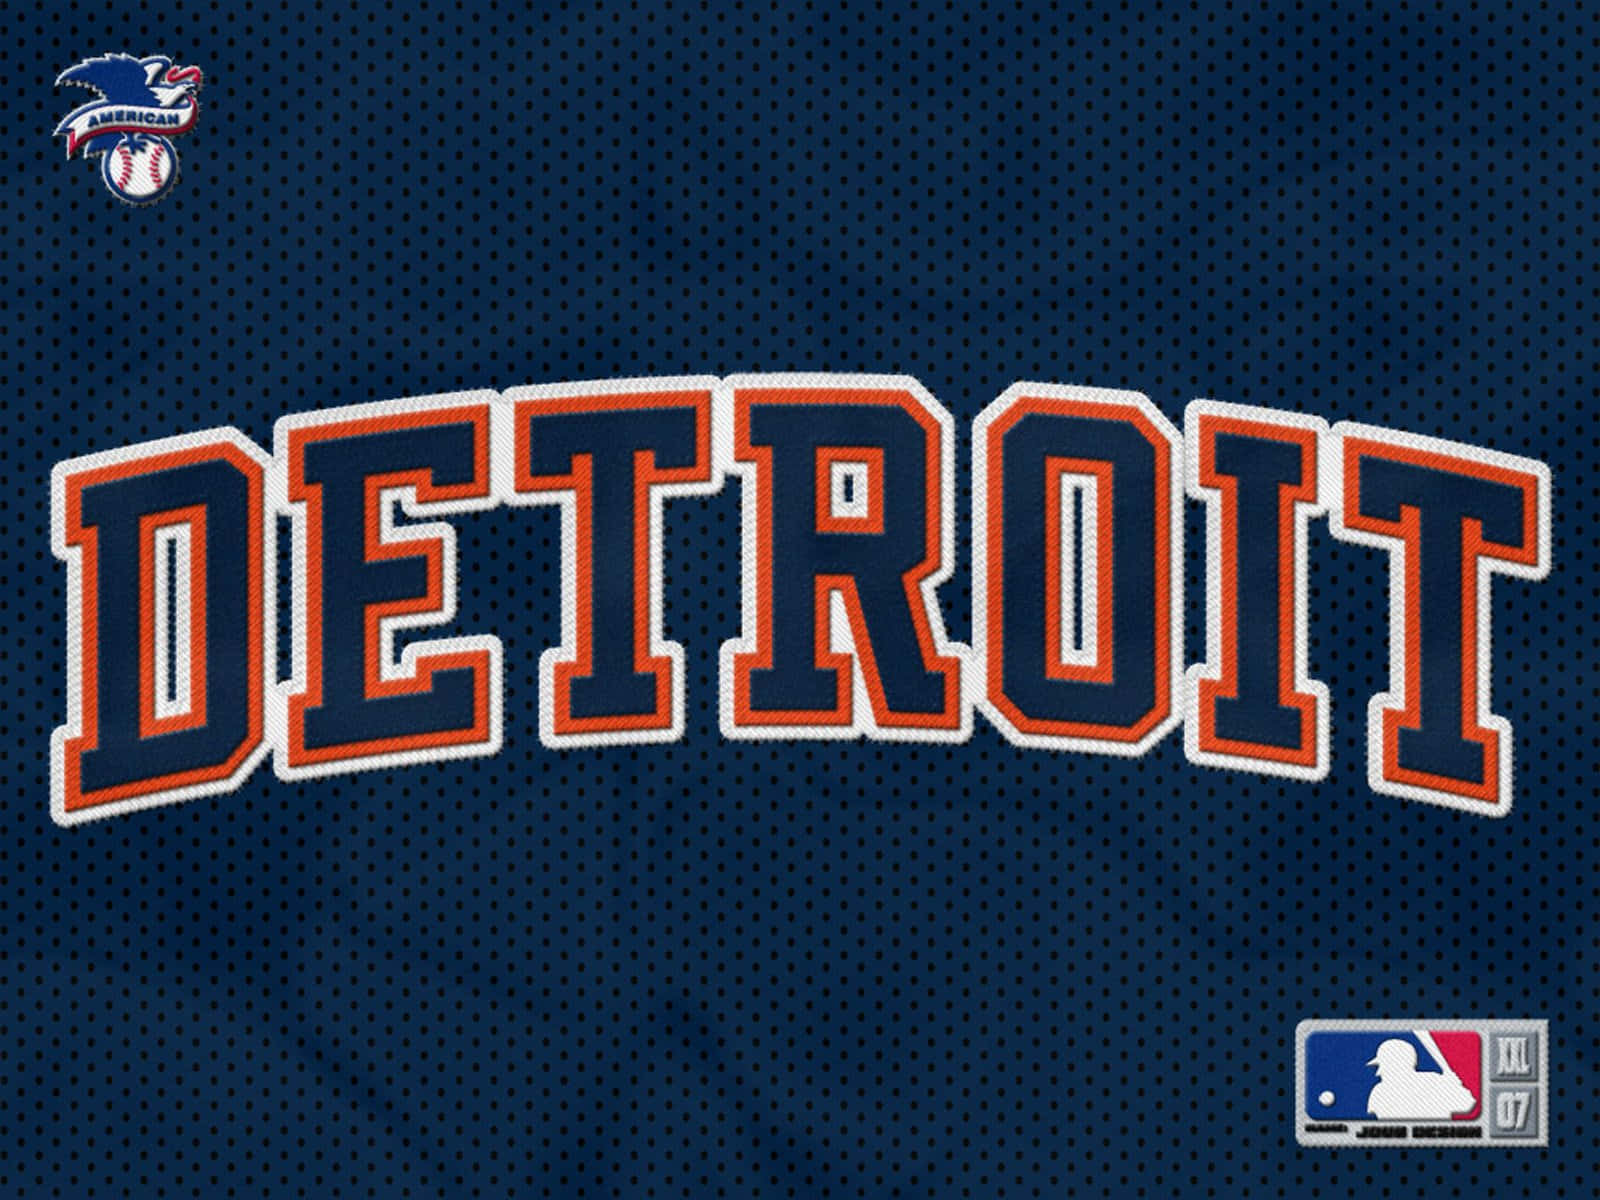 Detroittigers-logo Detroit-shirt Wallpaper